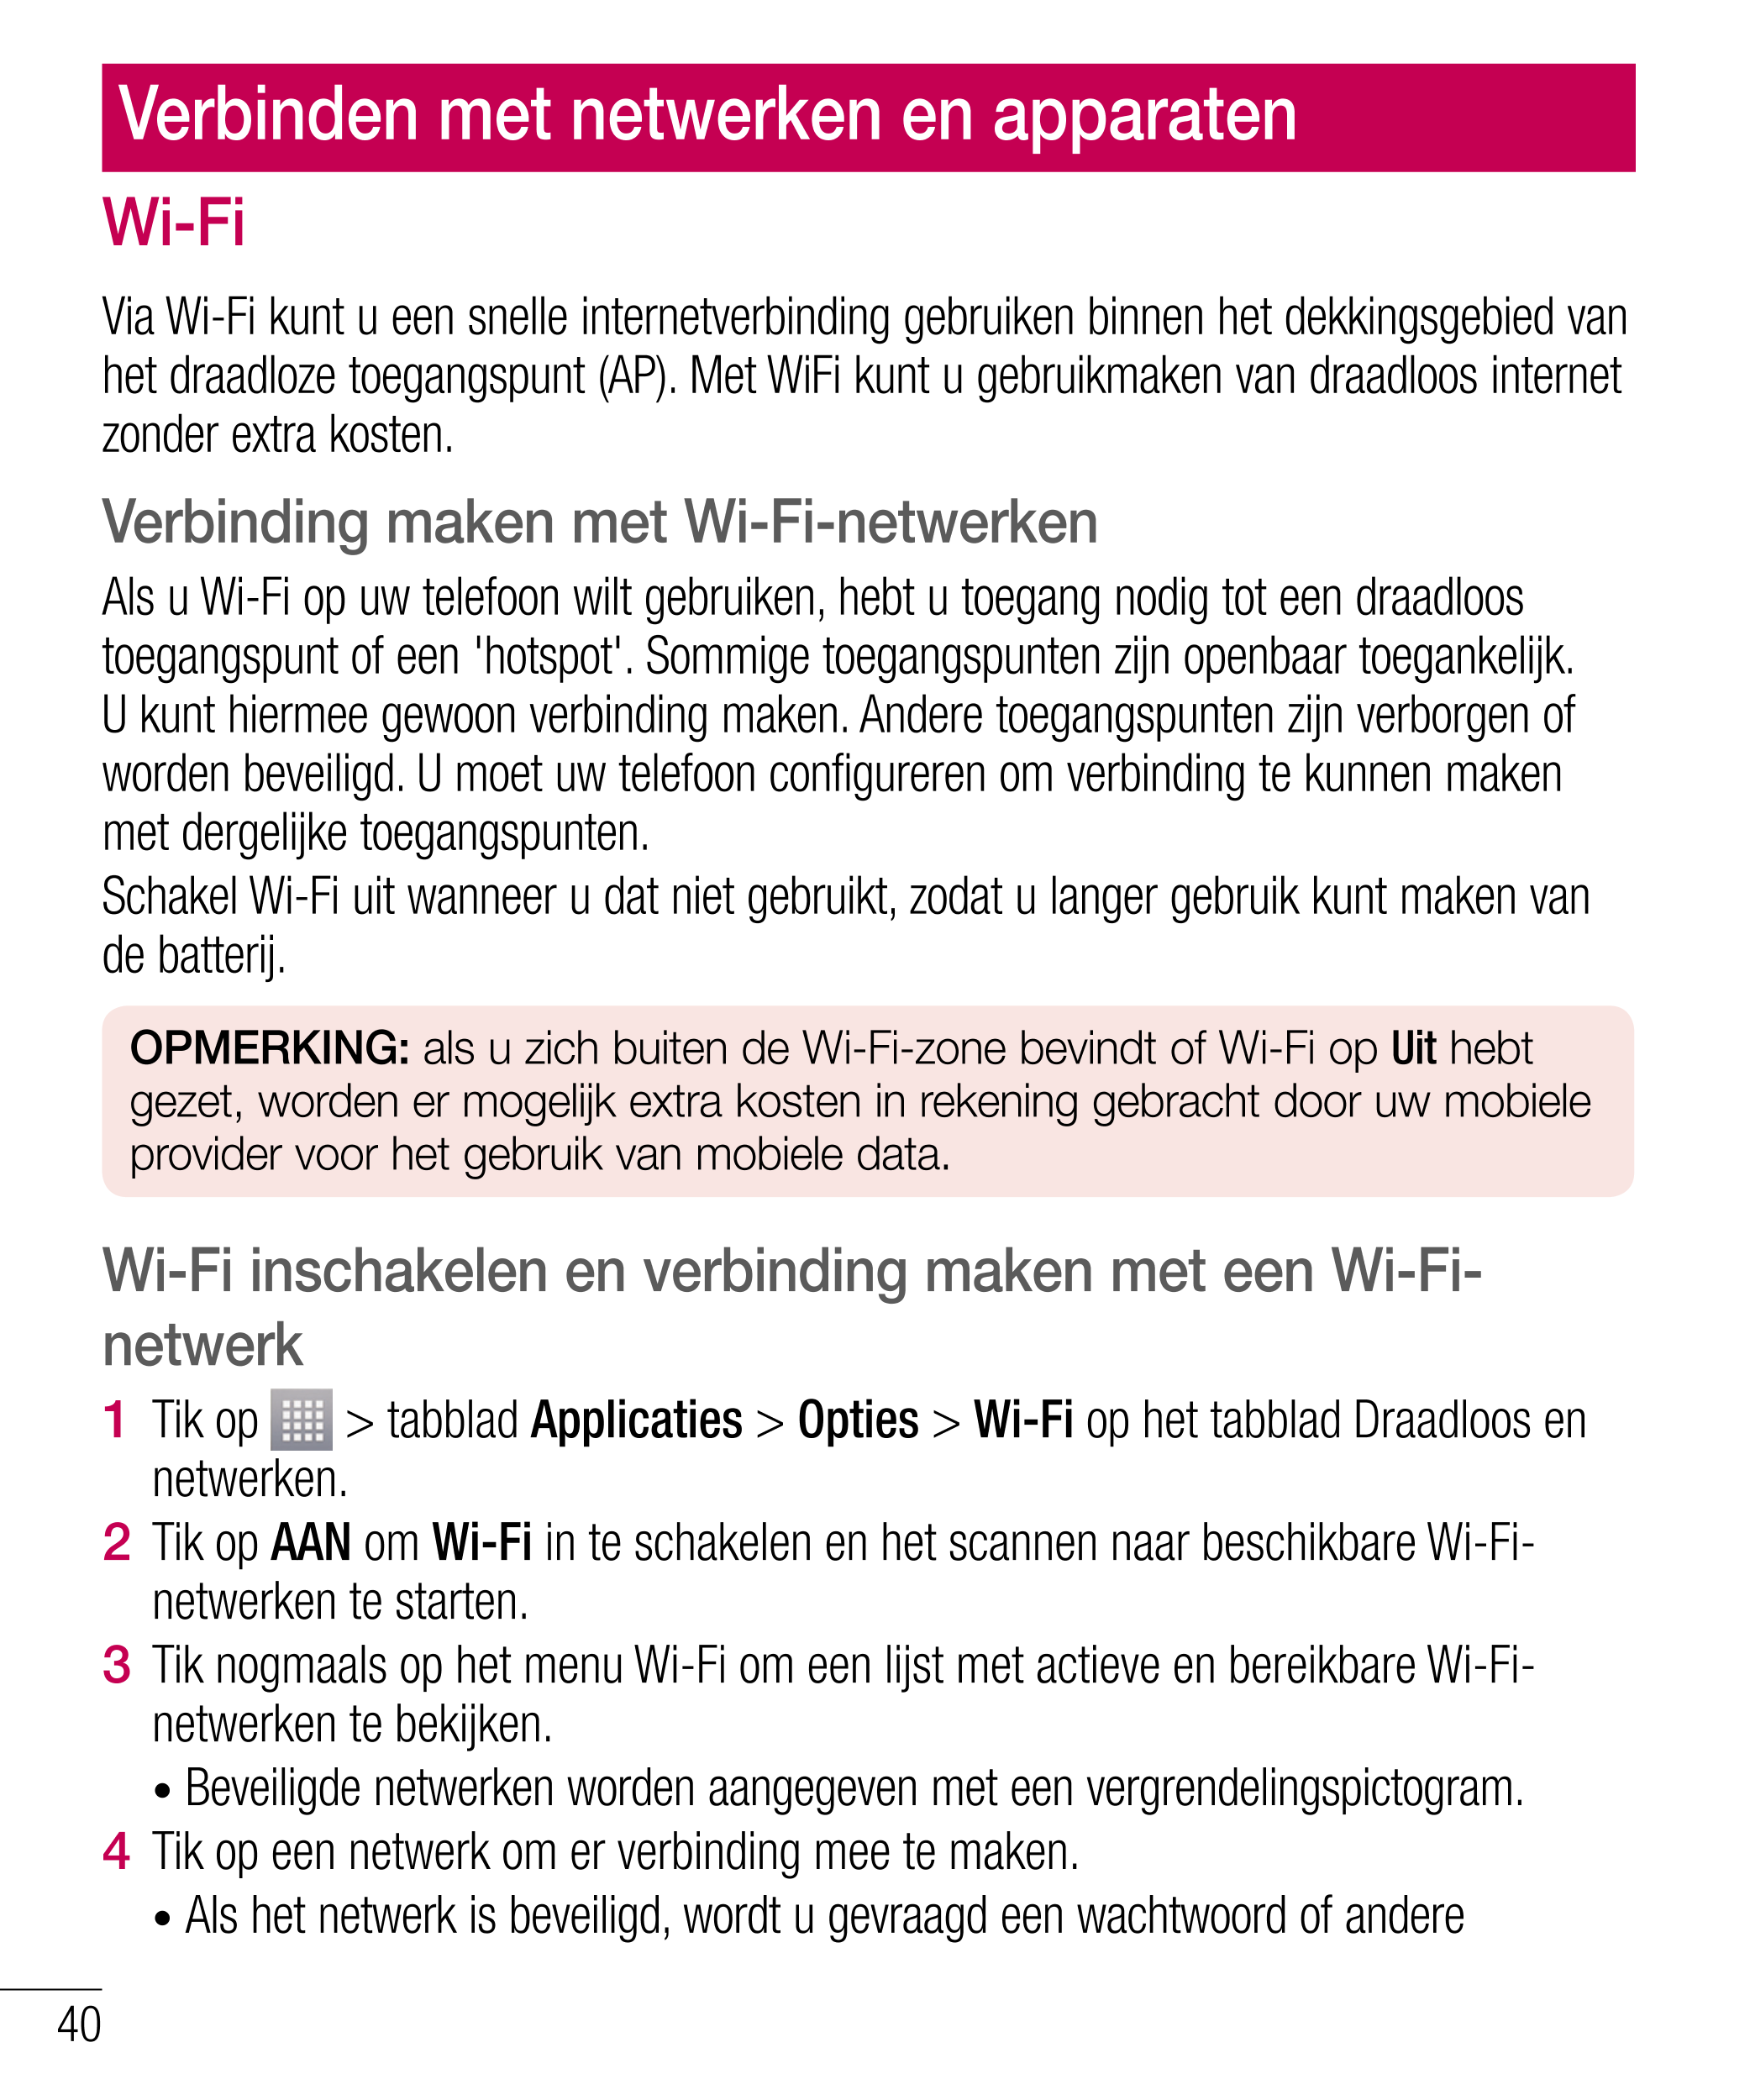 Verbinden met netwerken en apparaten
Wi-Fi aanmeldingsgegevens in te voeren. (Raadpleeg uw netwerkbeheerder voor meer 
informati